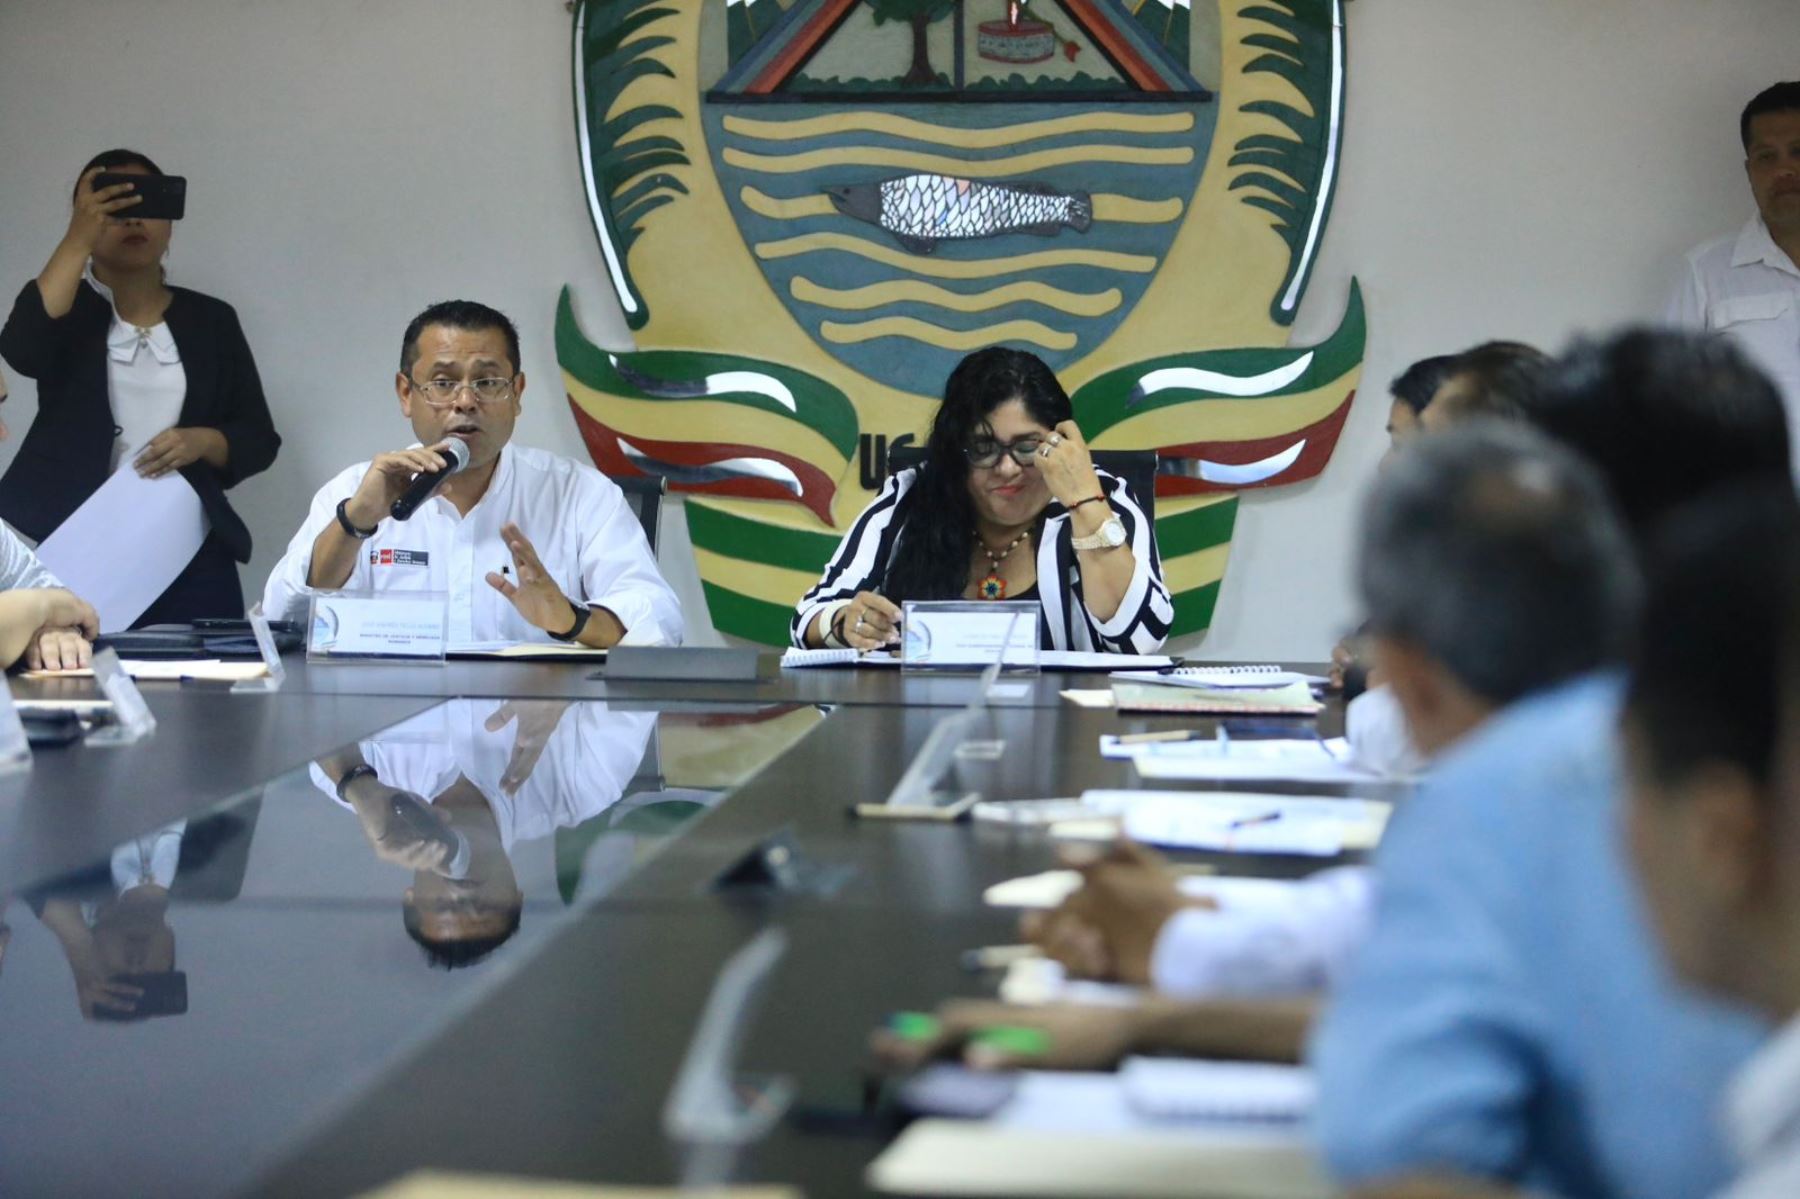 El ministro de Justicia, José Tello, participó en la instalación de la mesa de trabajo para el análisis y evaluación del estado situacional de saneamiento físico y legal de instituciones educativas y postas médicas en la región Ucayali.